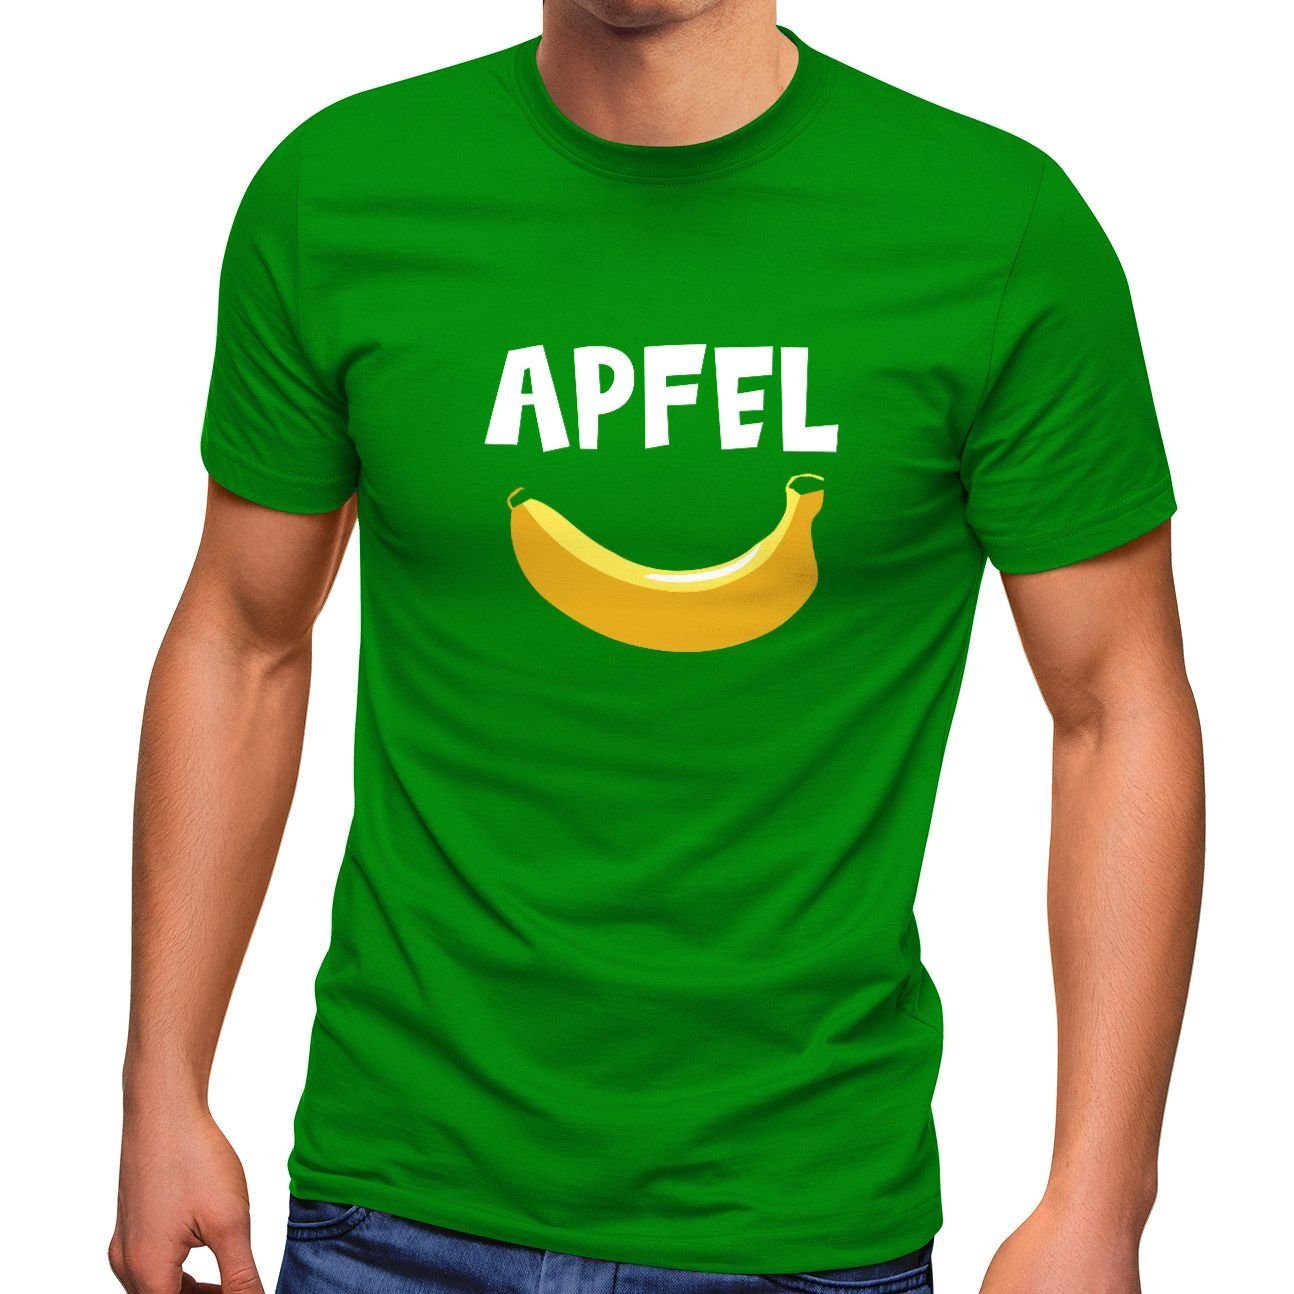 MoonWorks Print-Shirt lustig Herren T-Shirt Scherz Witz grün lustiger Spruch Print Moonworks® Apfel Aufdruck mit Fun-Shirt Banane